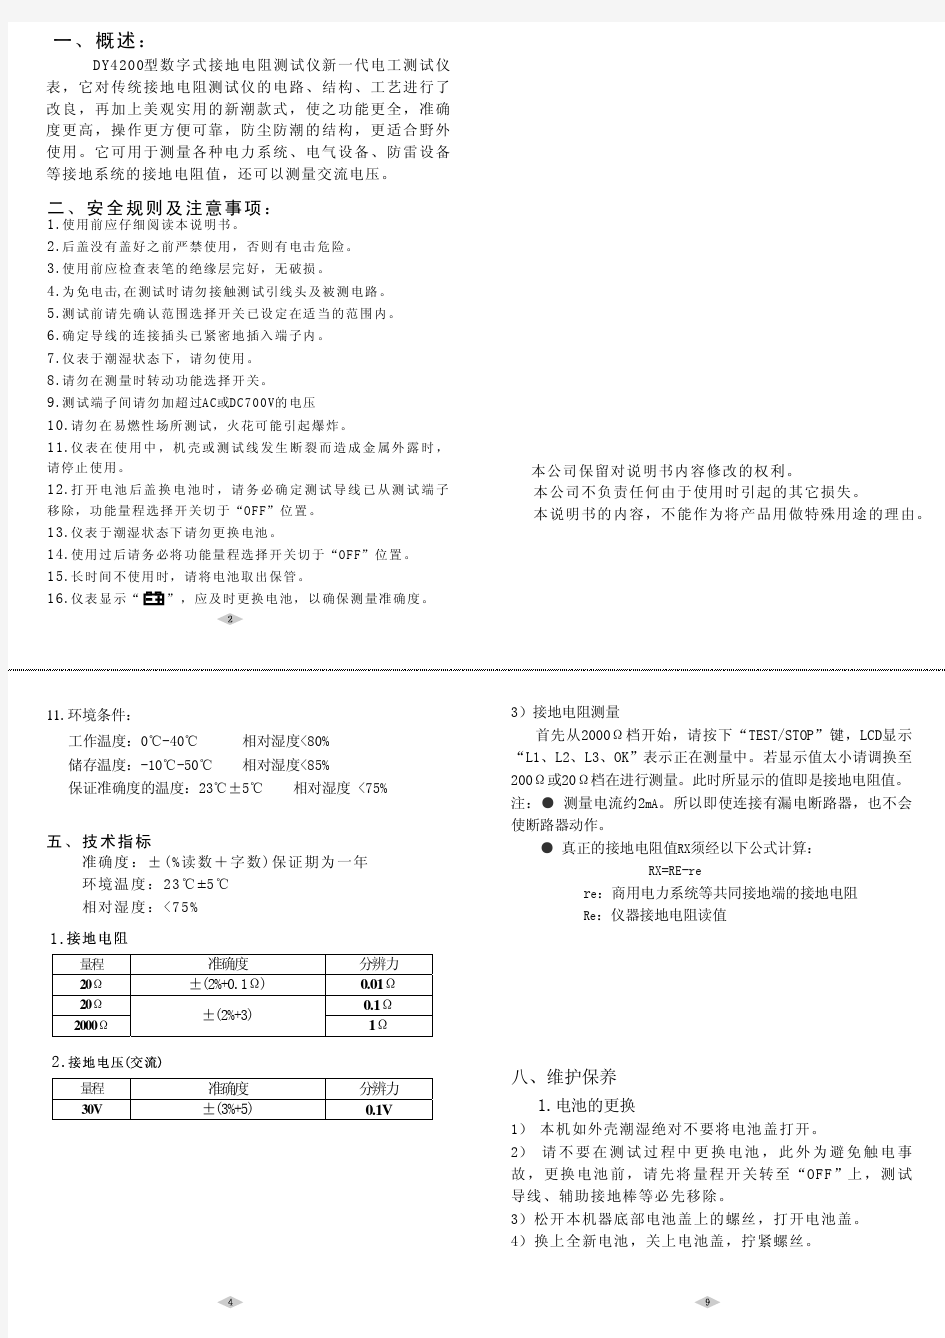 DY4200接地电阻测试仪中文说明书